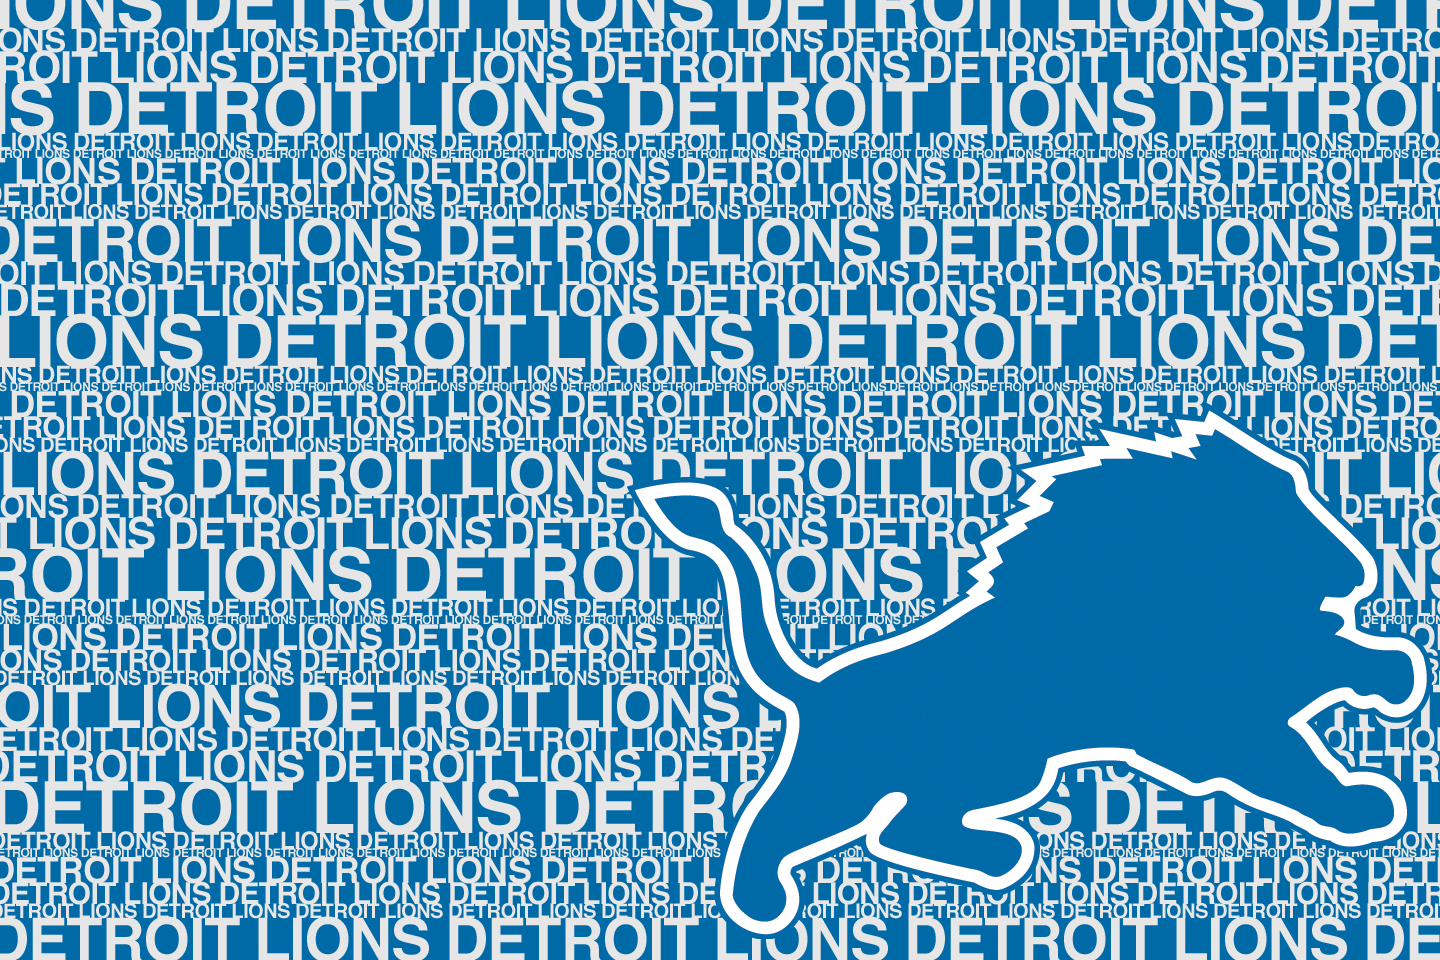 Detroit Lions Wallpaper HD Early